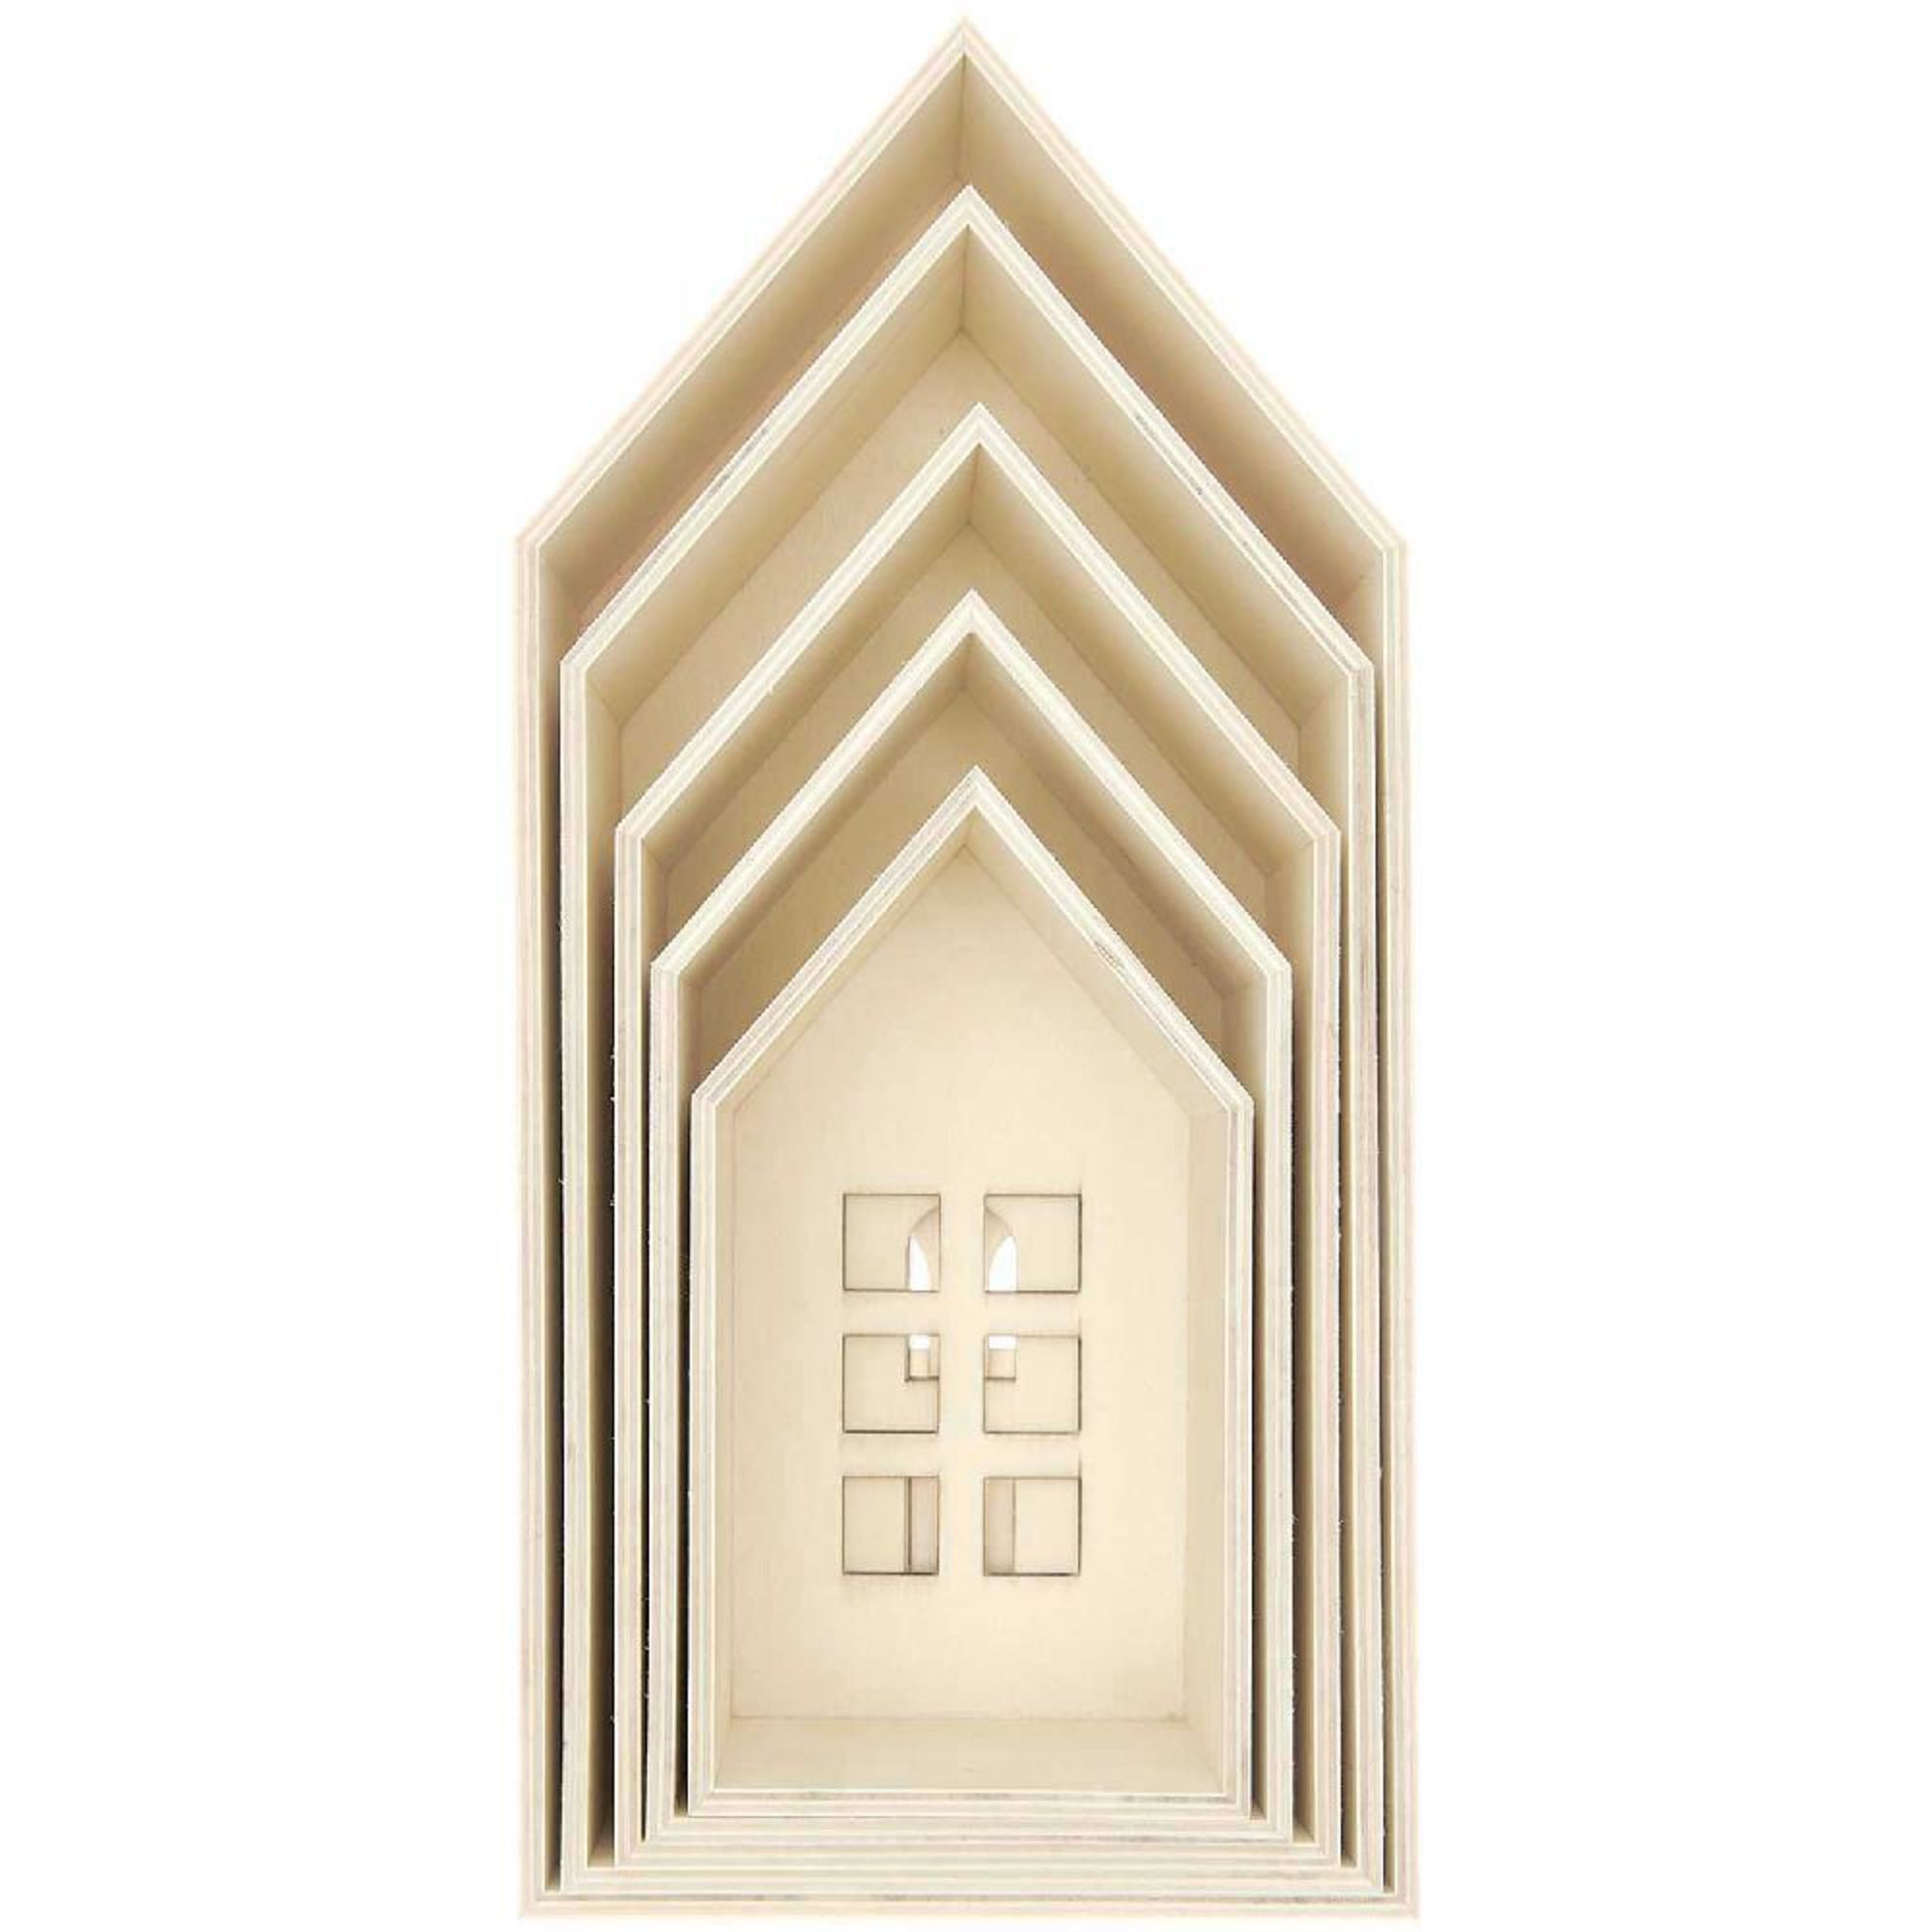 aus online bestellen 5er Set Holz-Deko-Häuser mit Fenstern,100% Holz